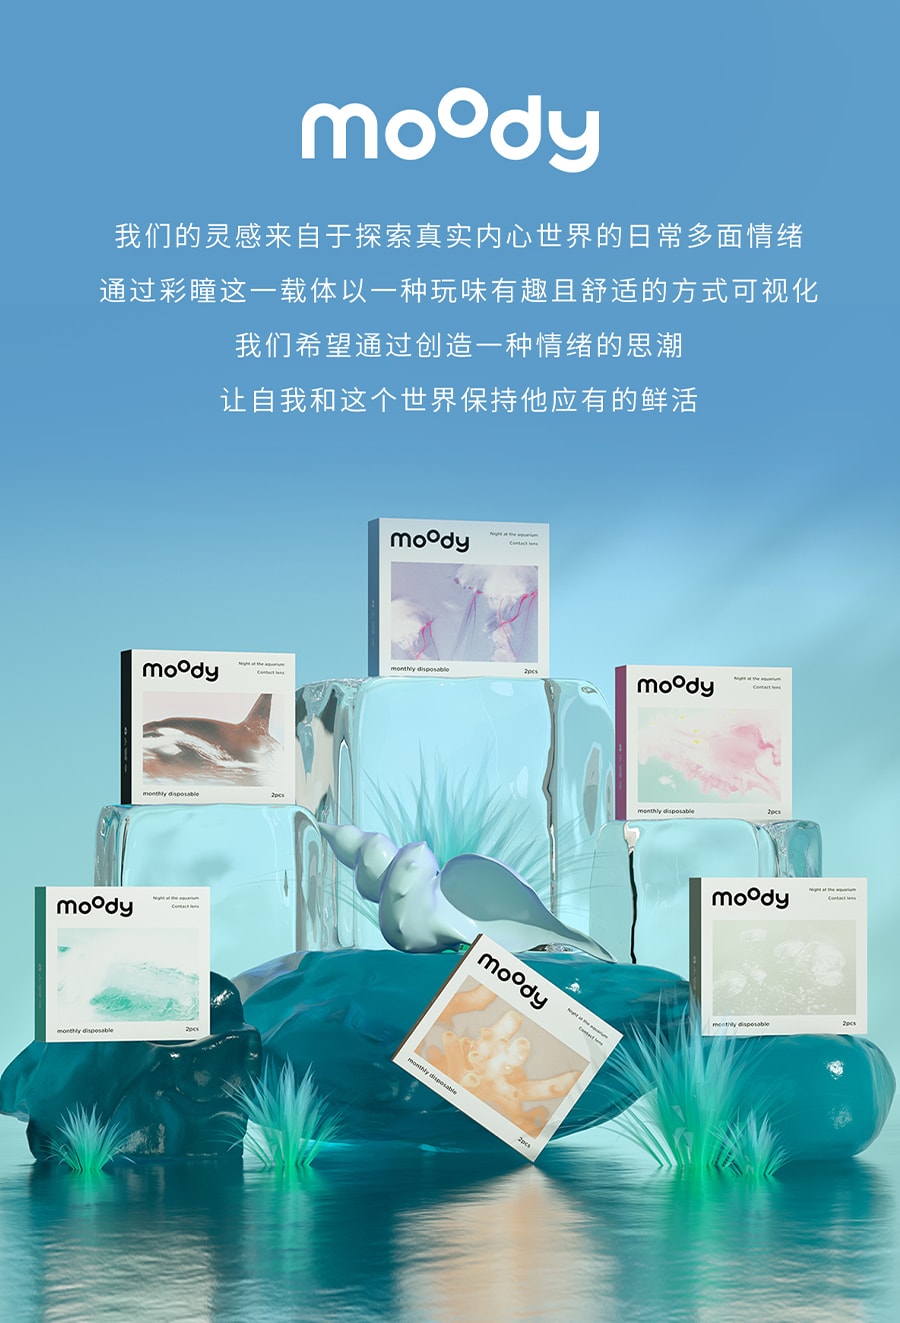 【中国直邮】moody美瞳月抛 水族馆系列 潜水海贝2片装 -8.00(800)